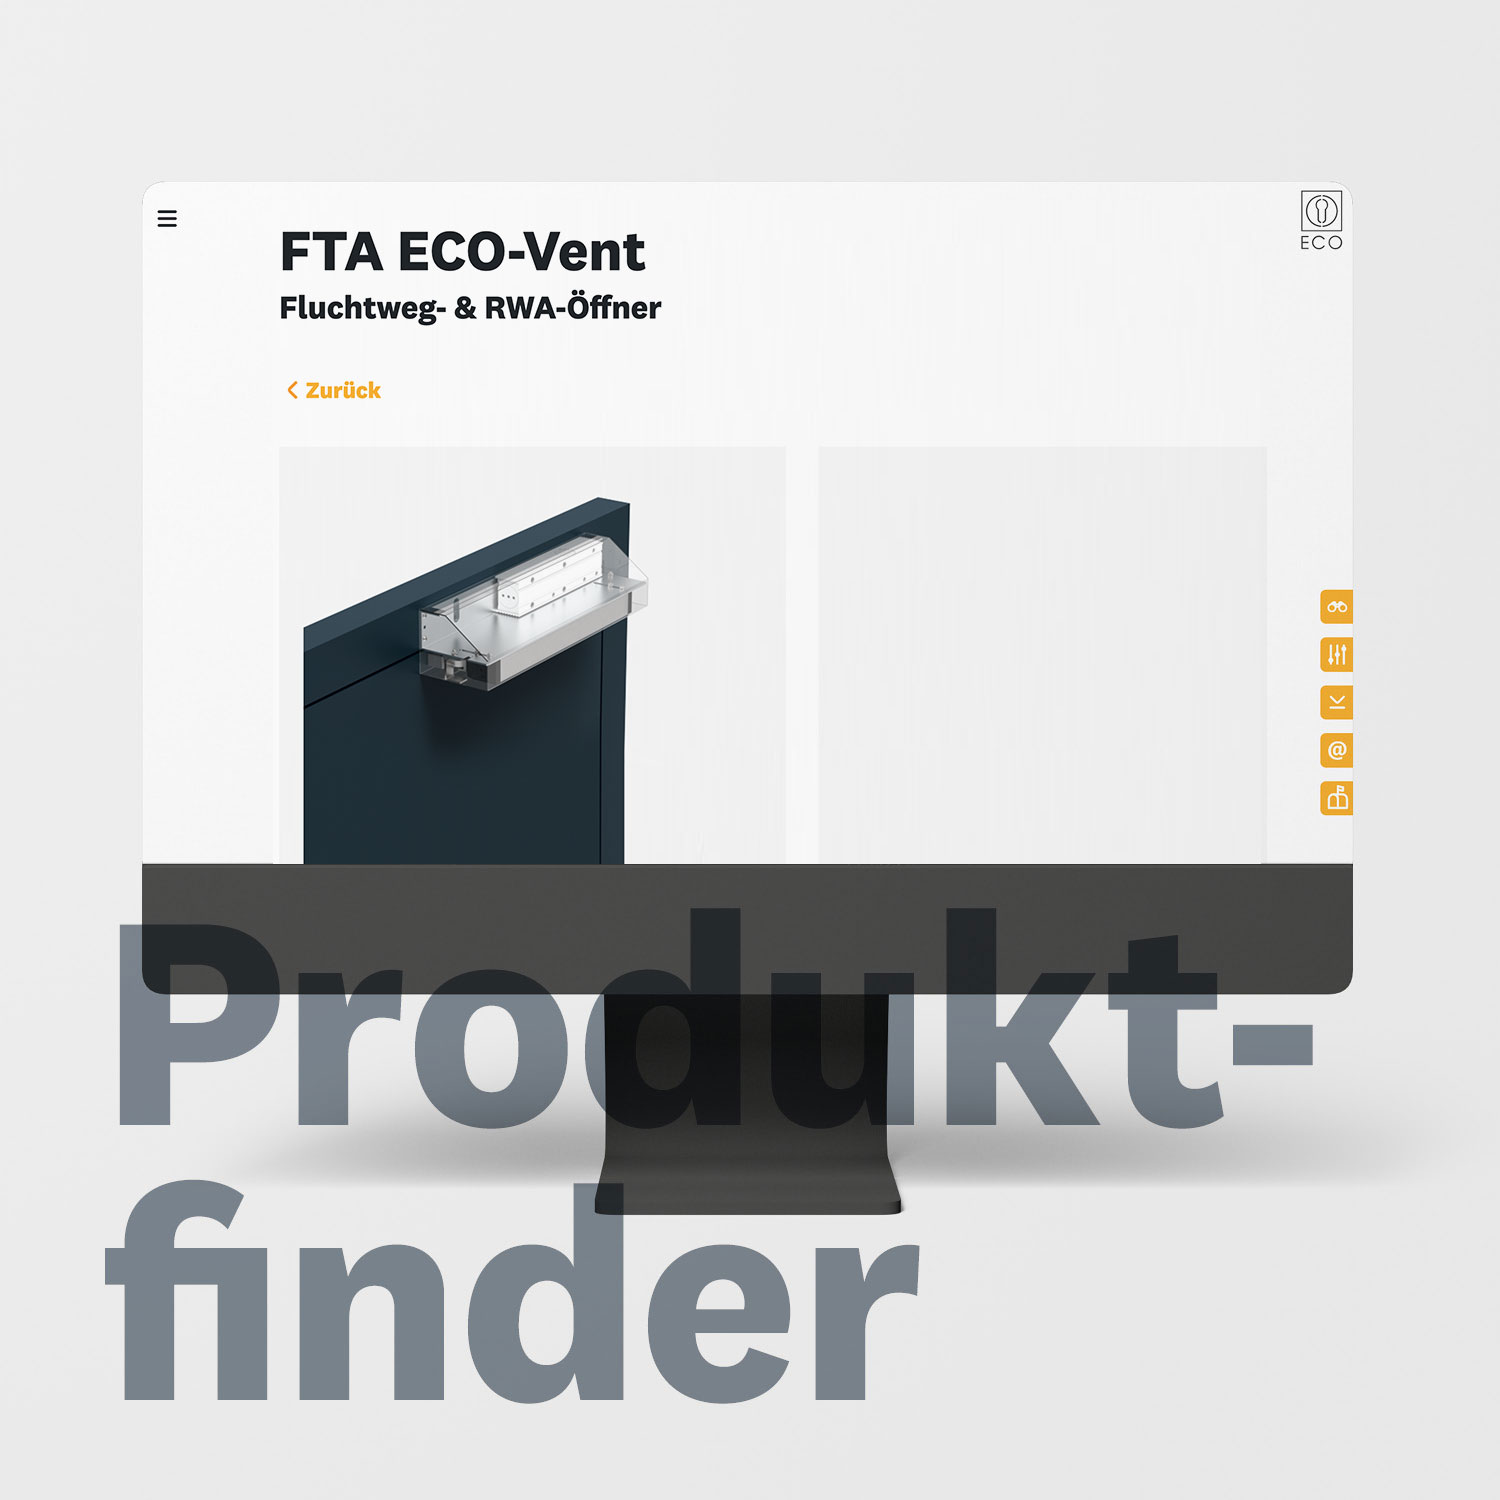 teaser_produktfinder_ifta-eco-vent-II_de